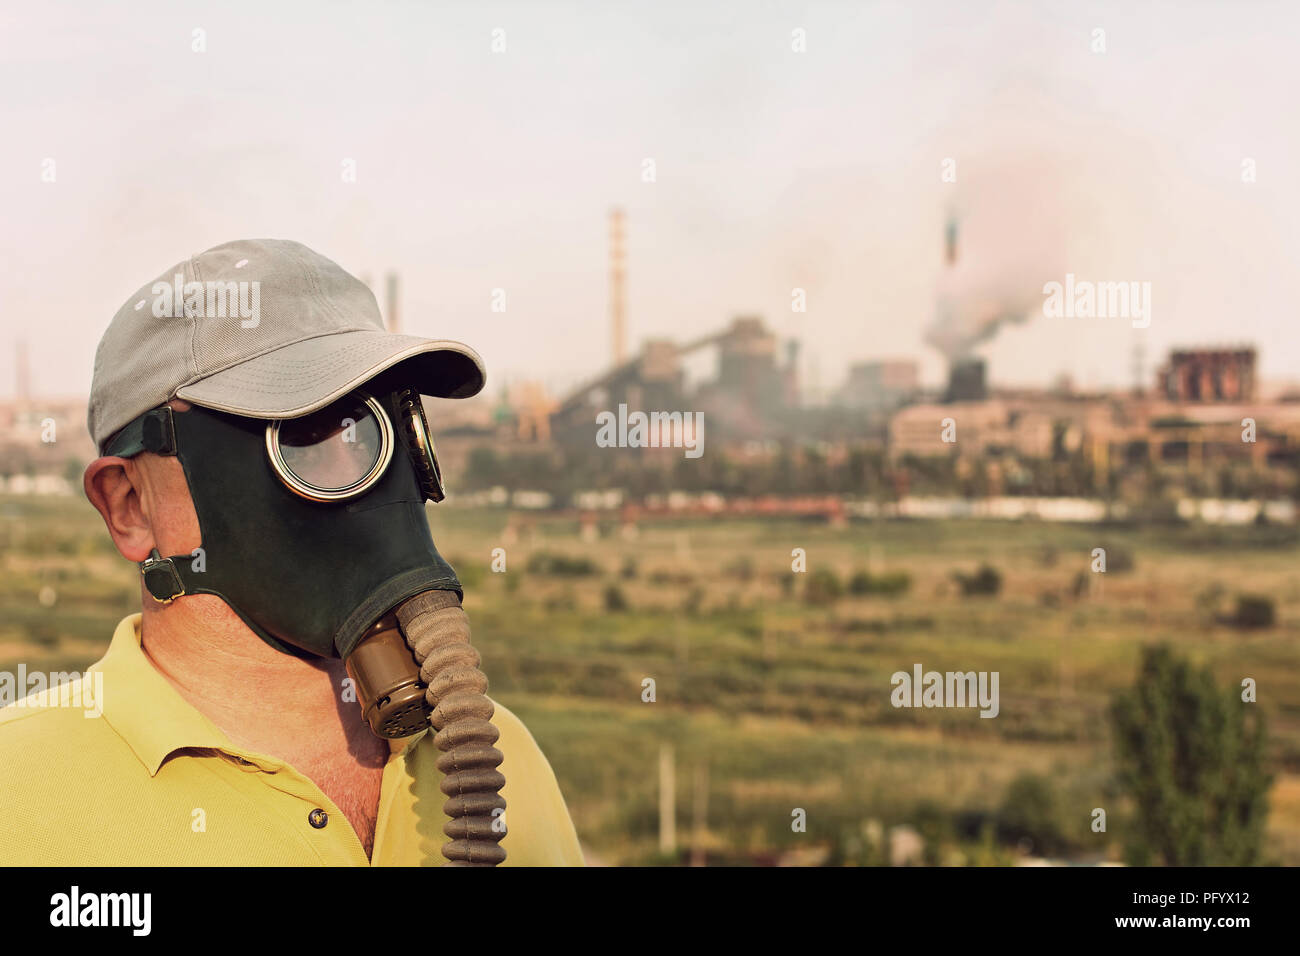 L'homme en masque à gaz et cap sur l'usine industrielle et l'arrière-plan pipe. Retro style tonique de l'image. Banque D'Images